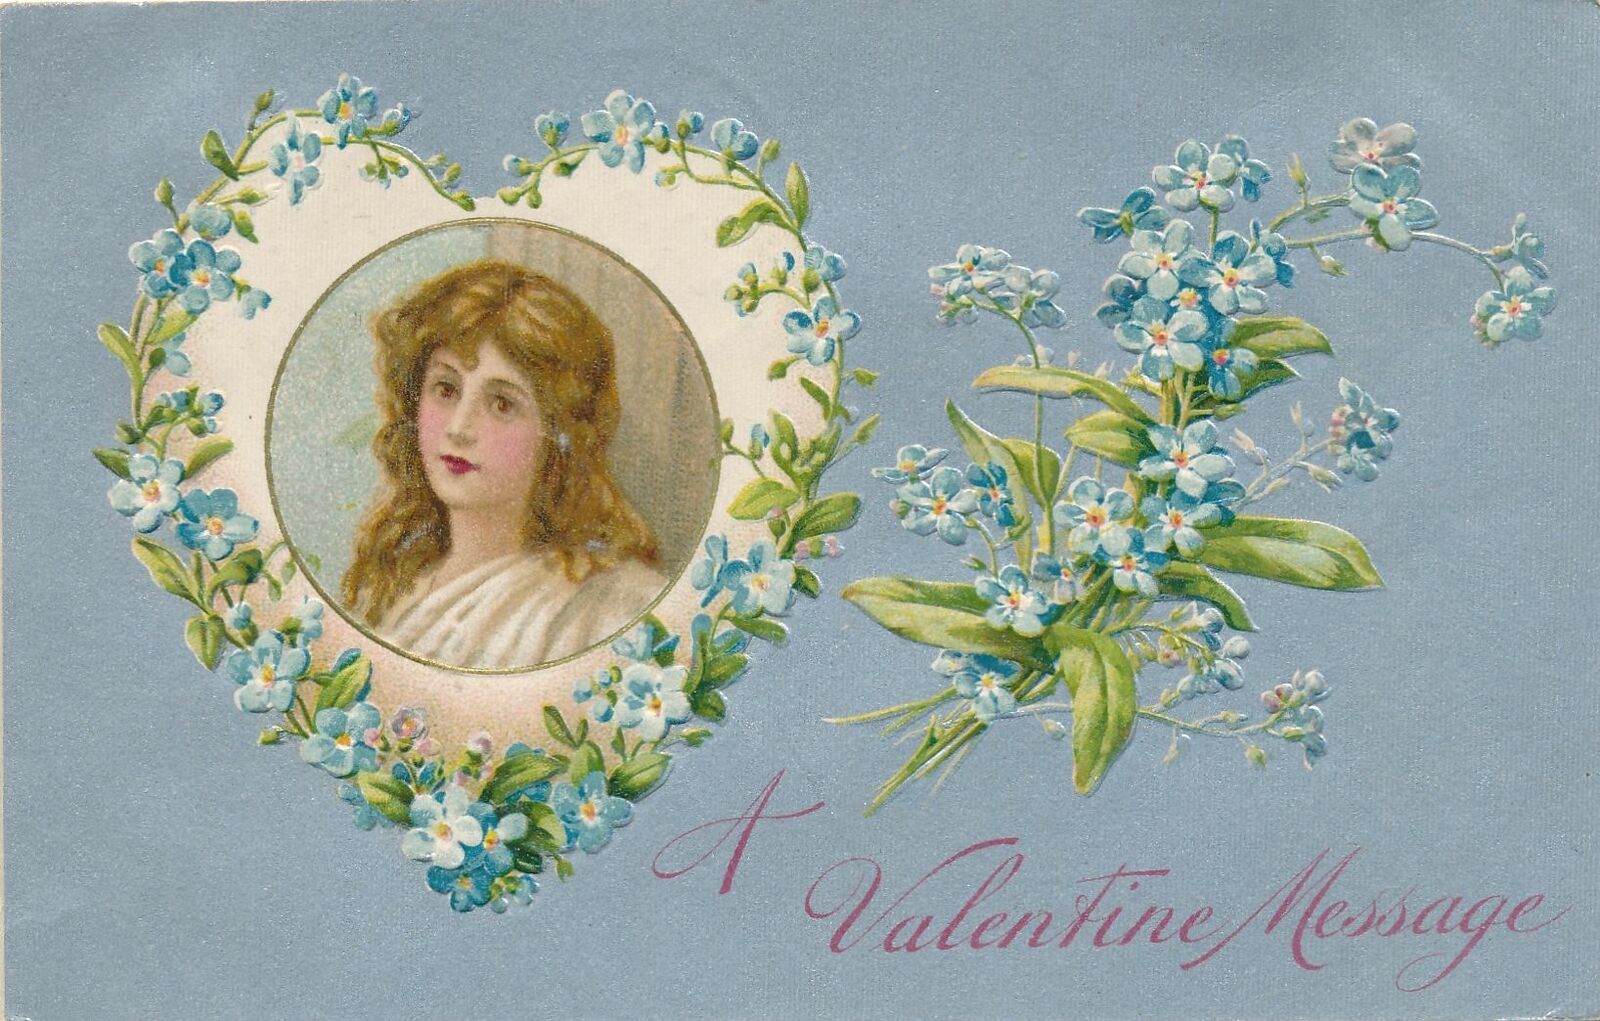 VALENTINE'S DAY - Girl In Flower Heart A Valentine Message - 1909